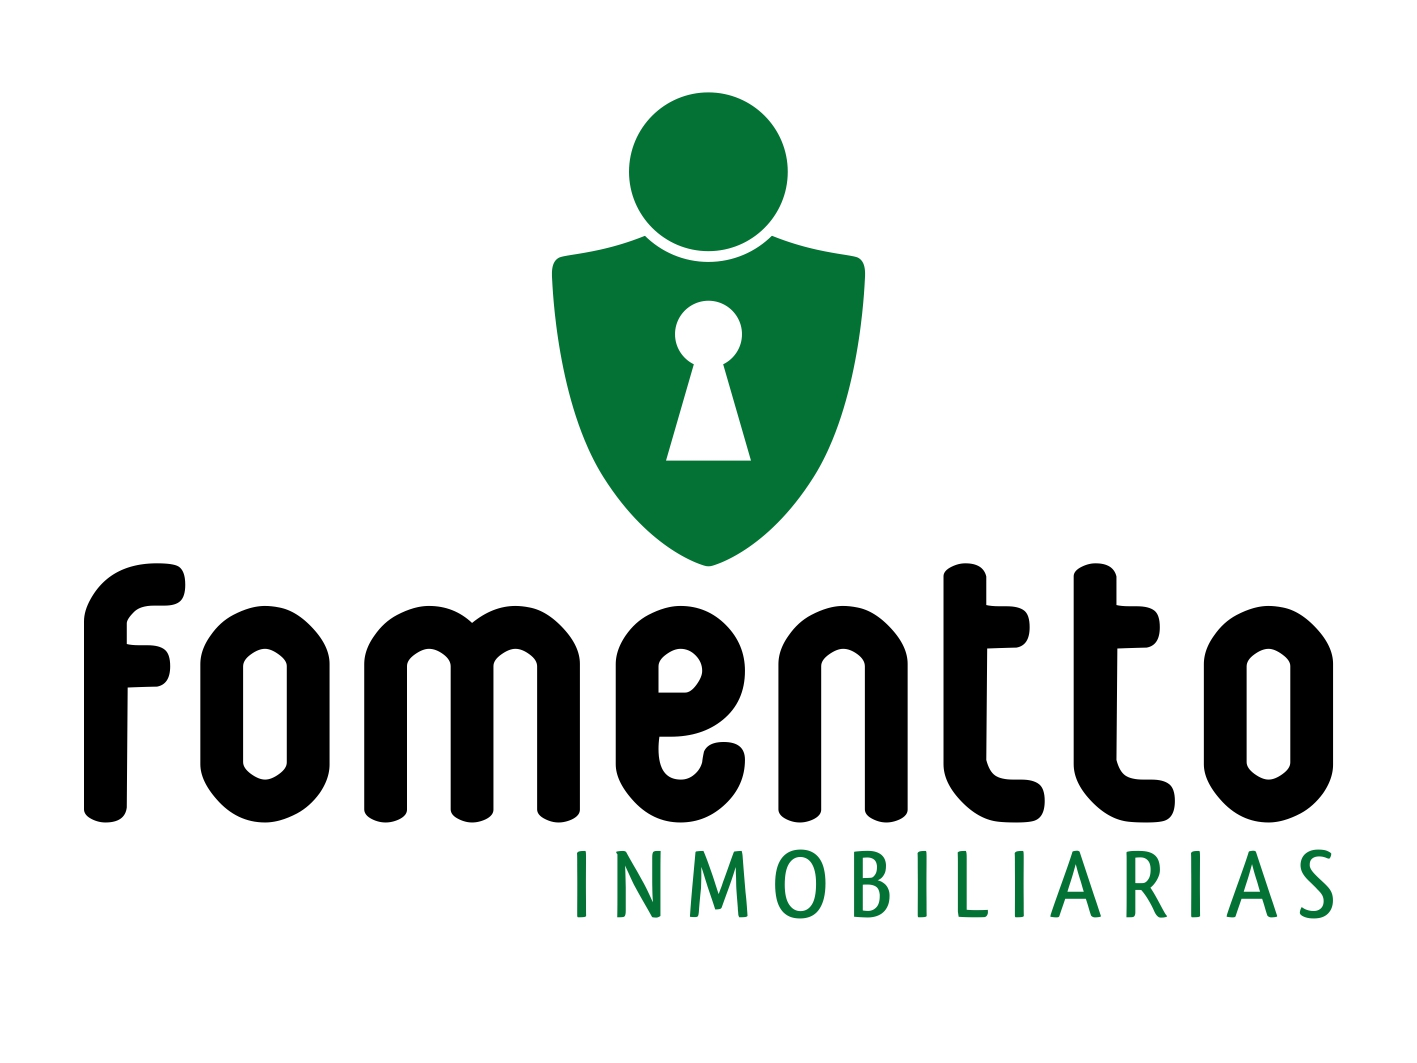 Logo FOMENTTO INMOBILIARIAS